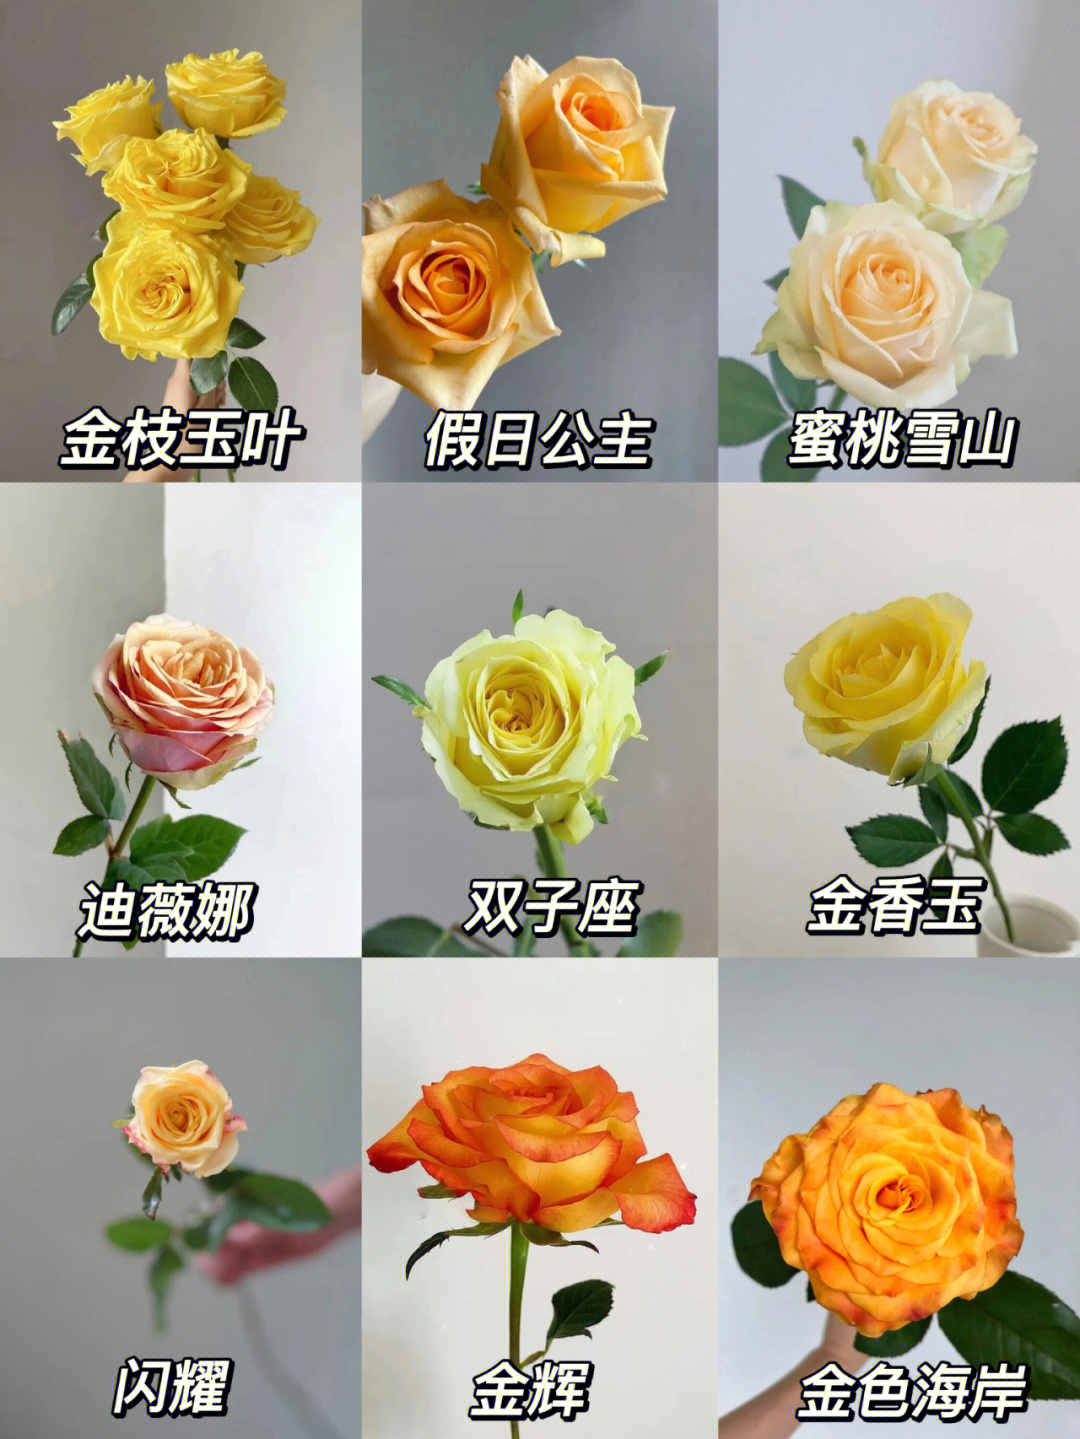 玫瑰品种图鉴橙黄色玫瑰系列